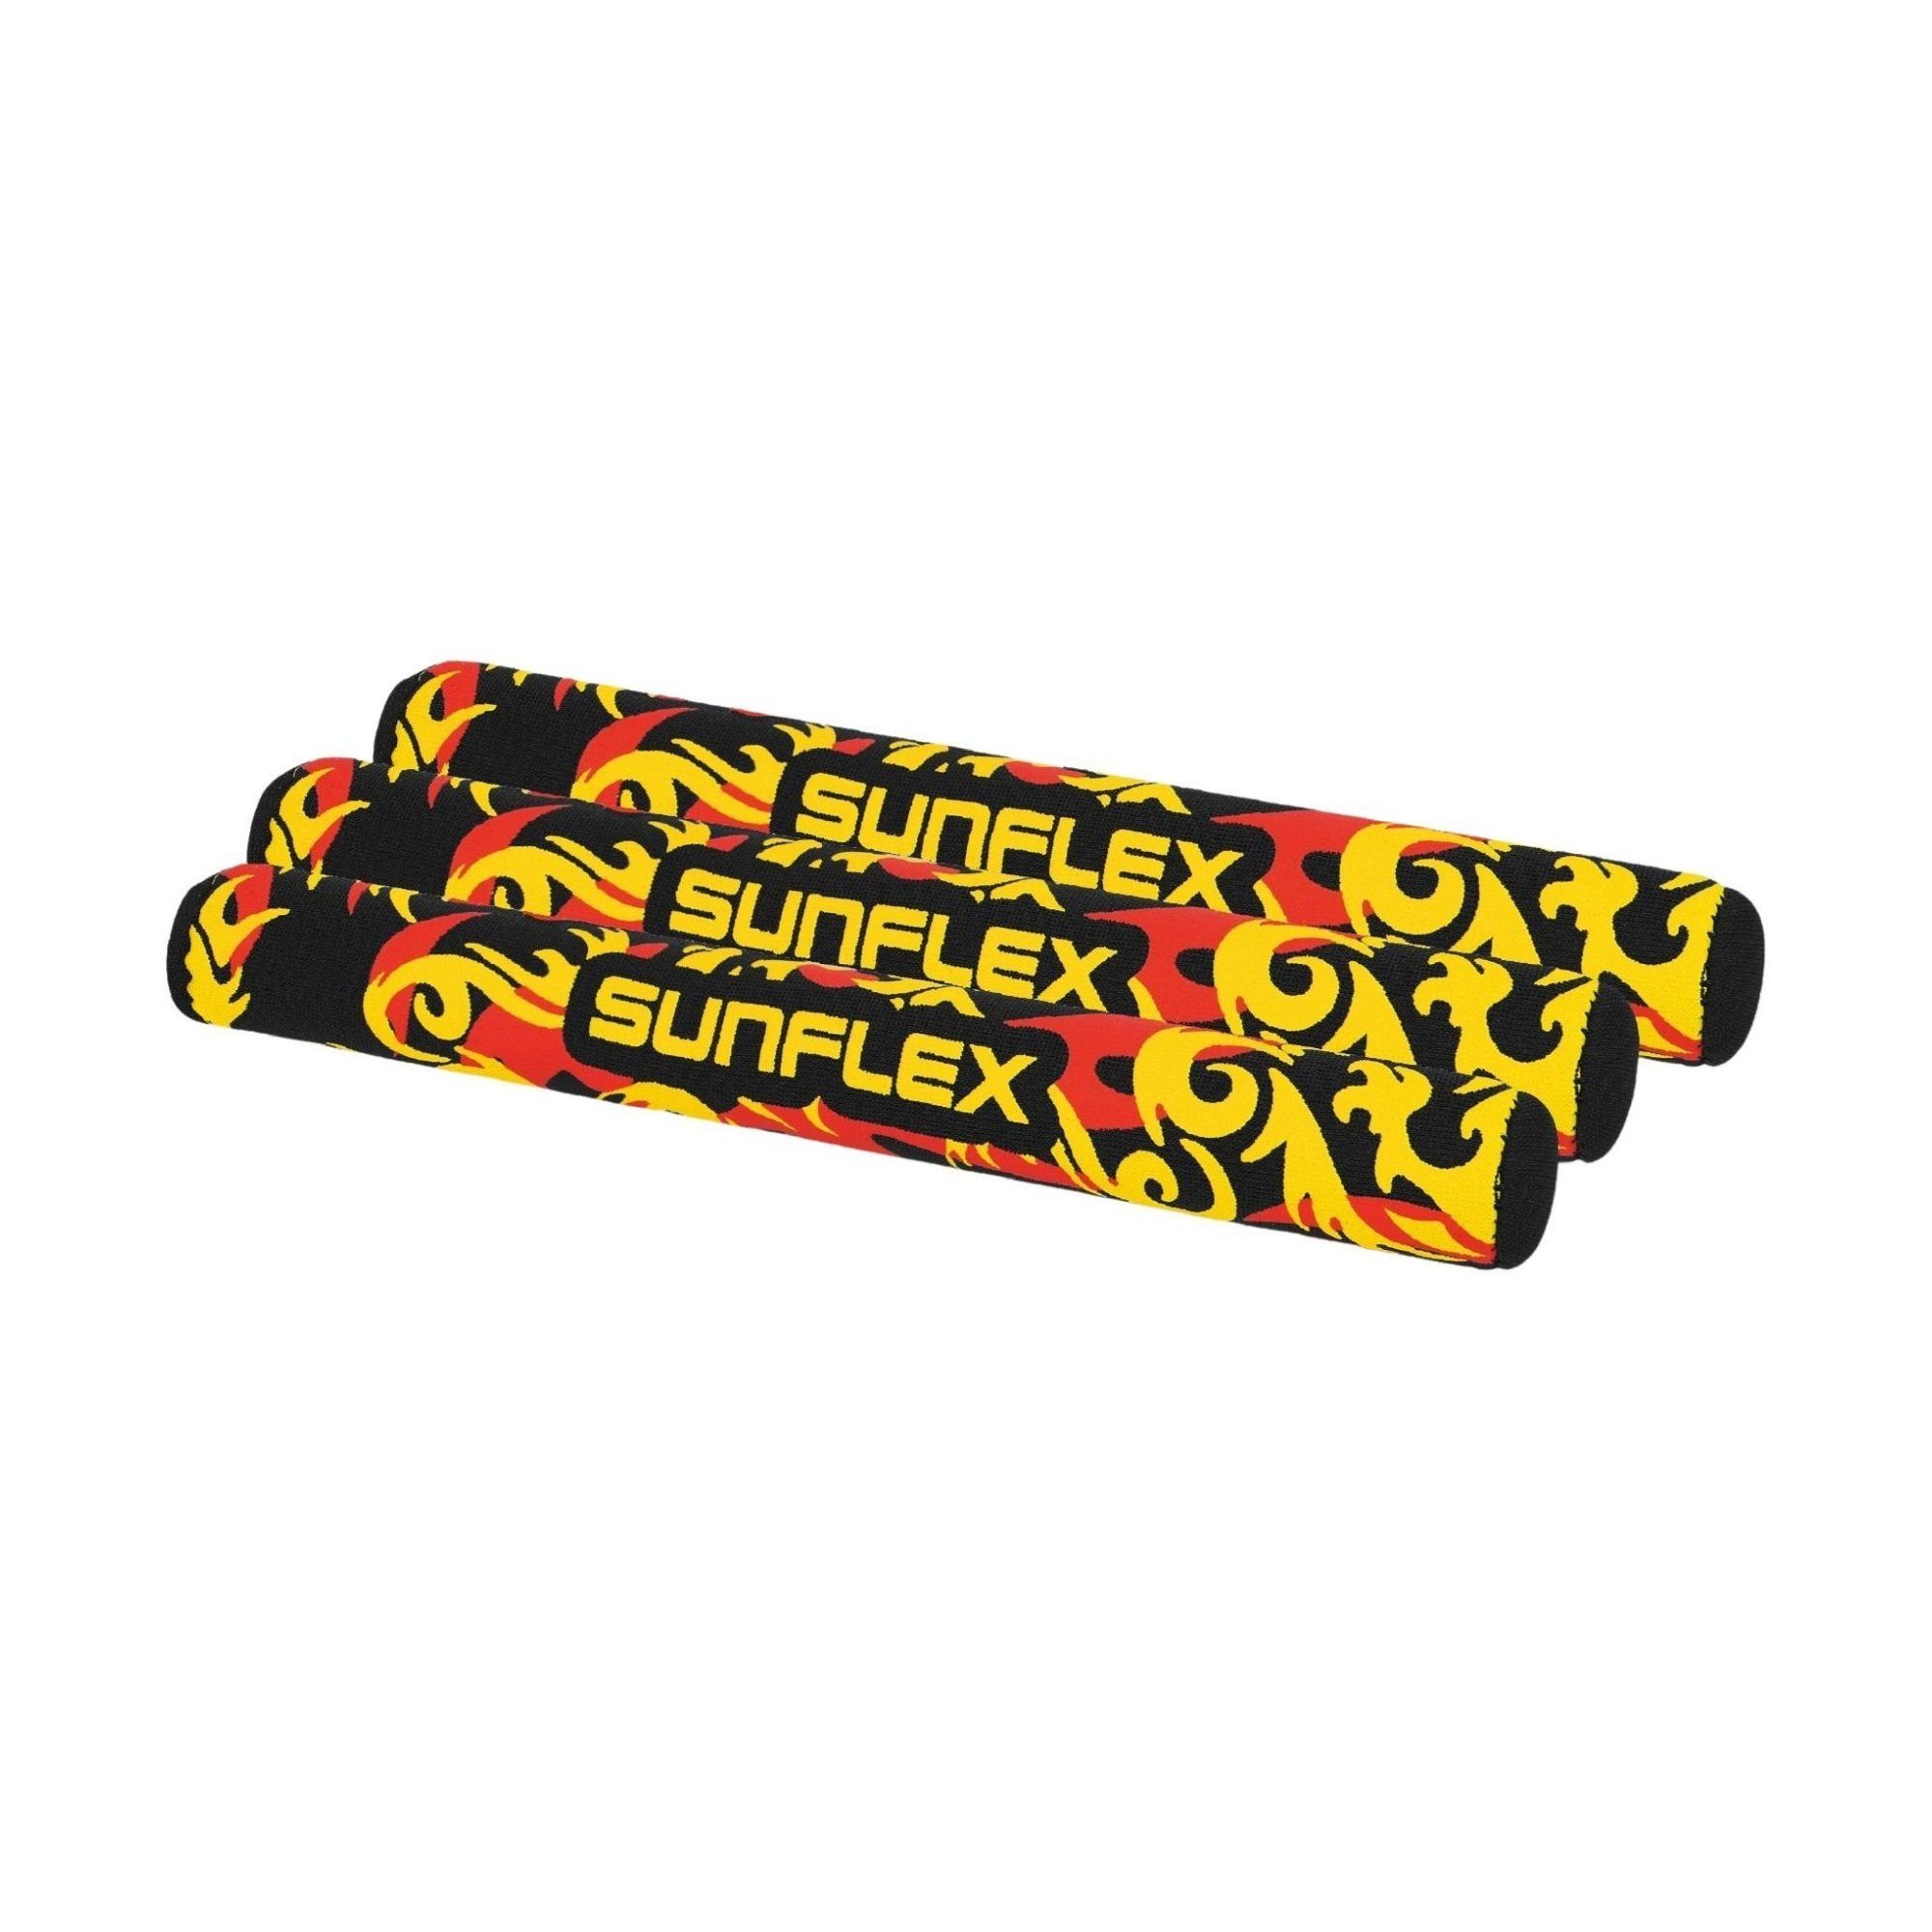 Sunflex Tauchset sunflex Tauchstäbe Flames Dragon | Tauchsets